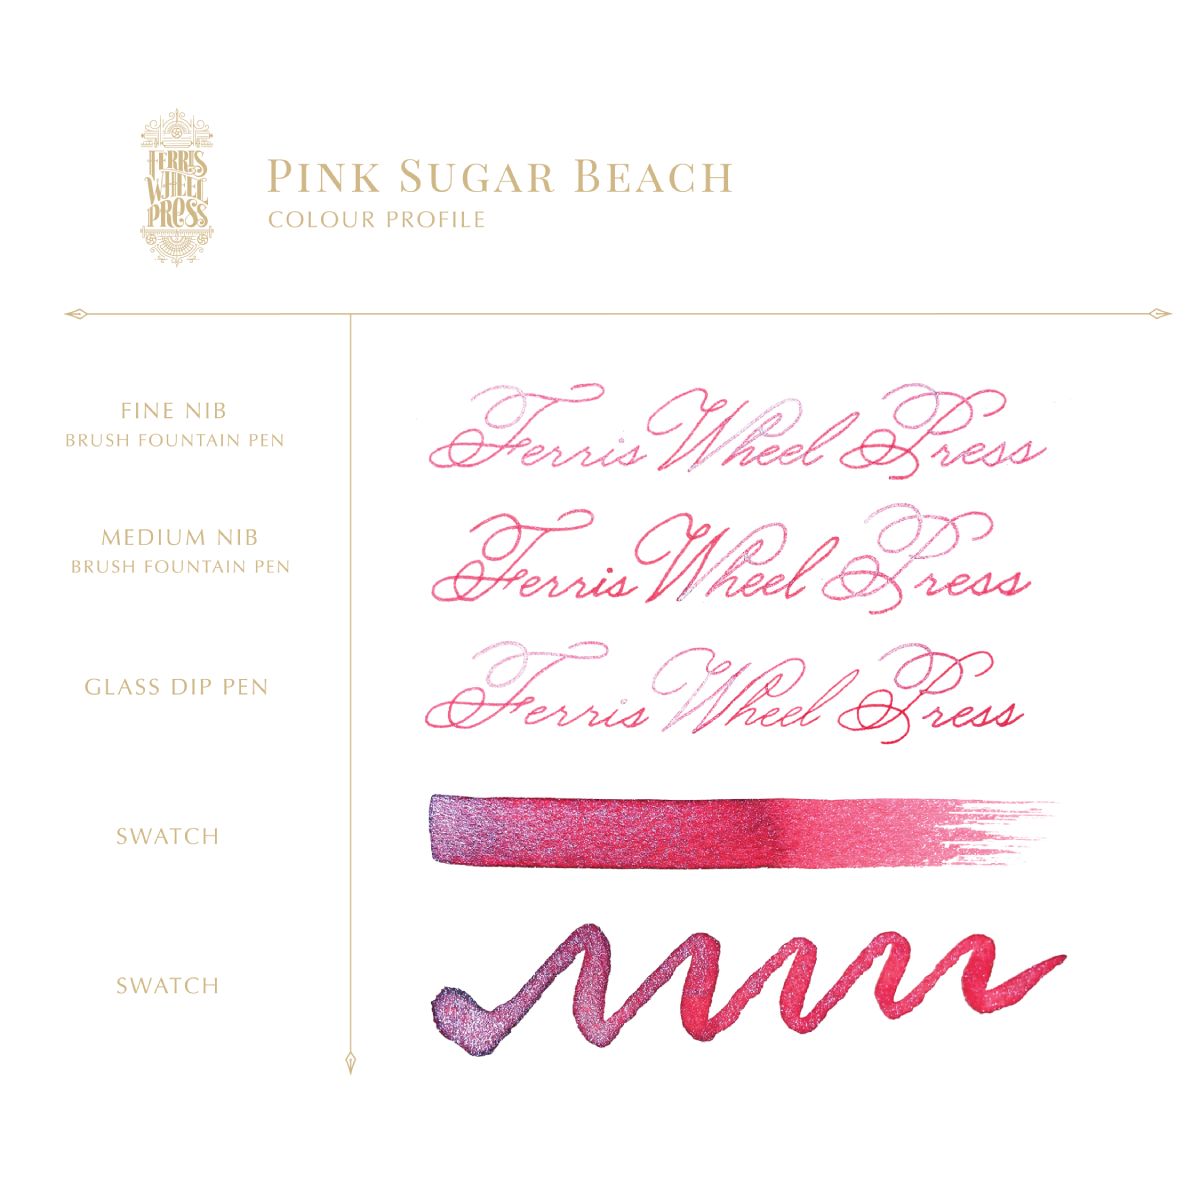 Ferris Wheel Press - Pink Sugar Beach, 38 ml